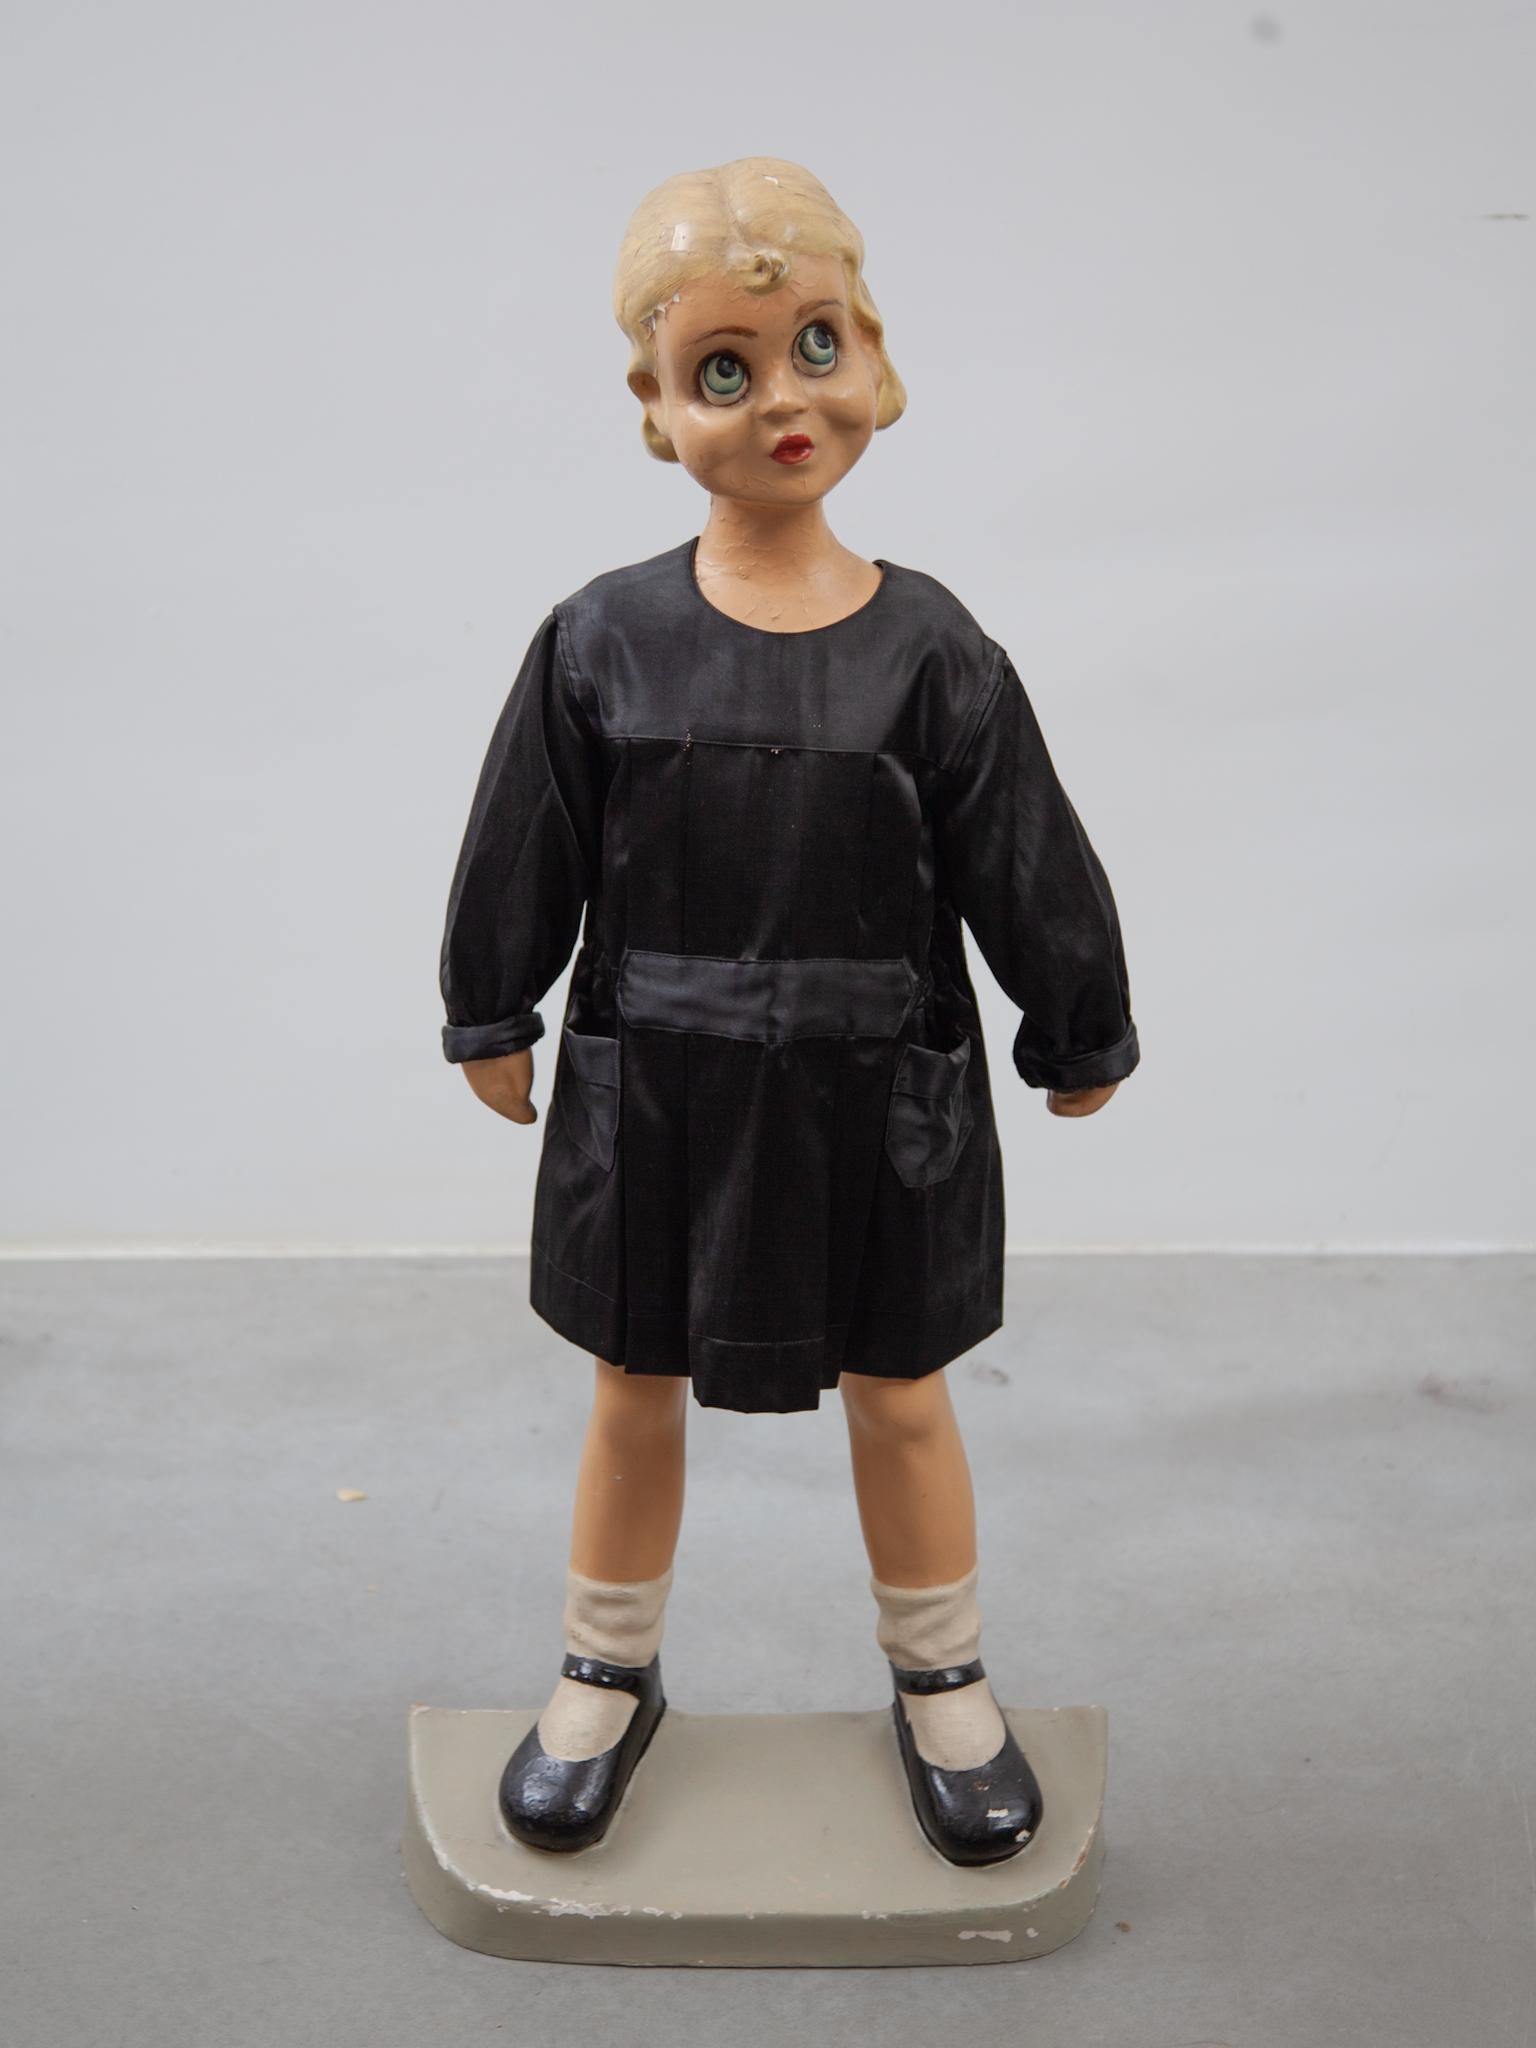 Mannequin enfant original de vitrine pour vêtements d'école primaire, il porte une robe noire comme exemple d'uniformes d'enfants des années 1950.